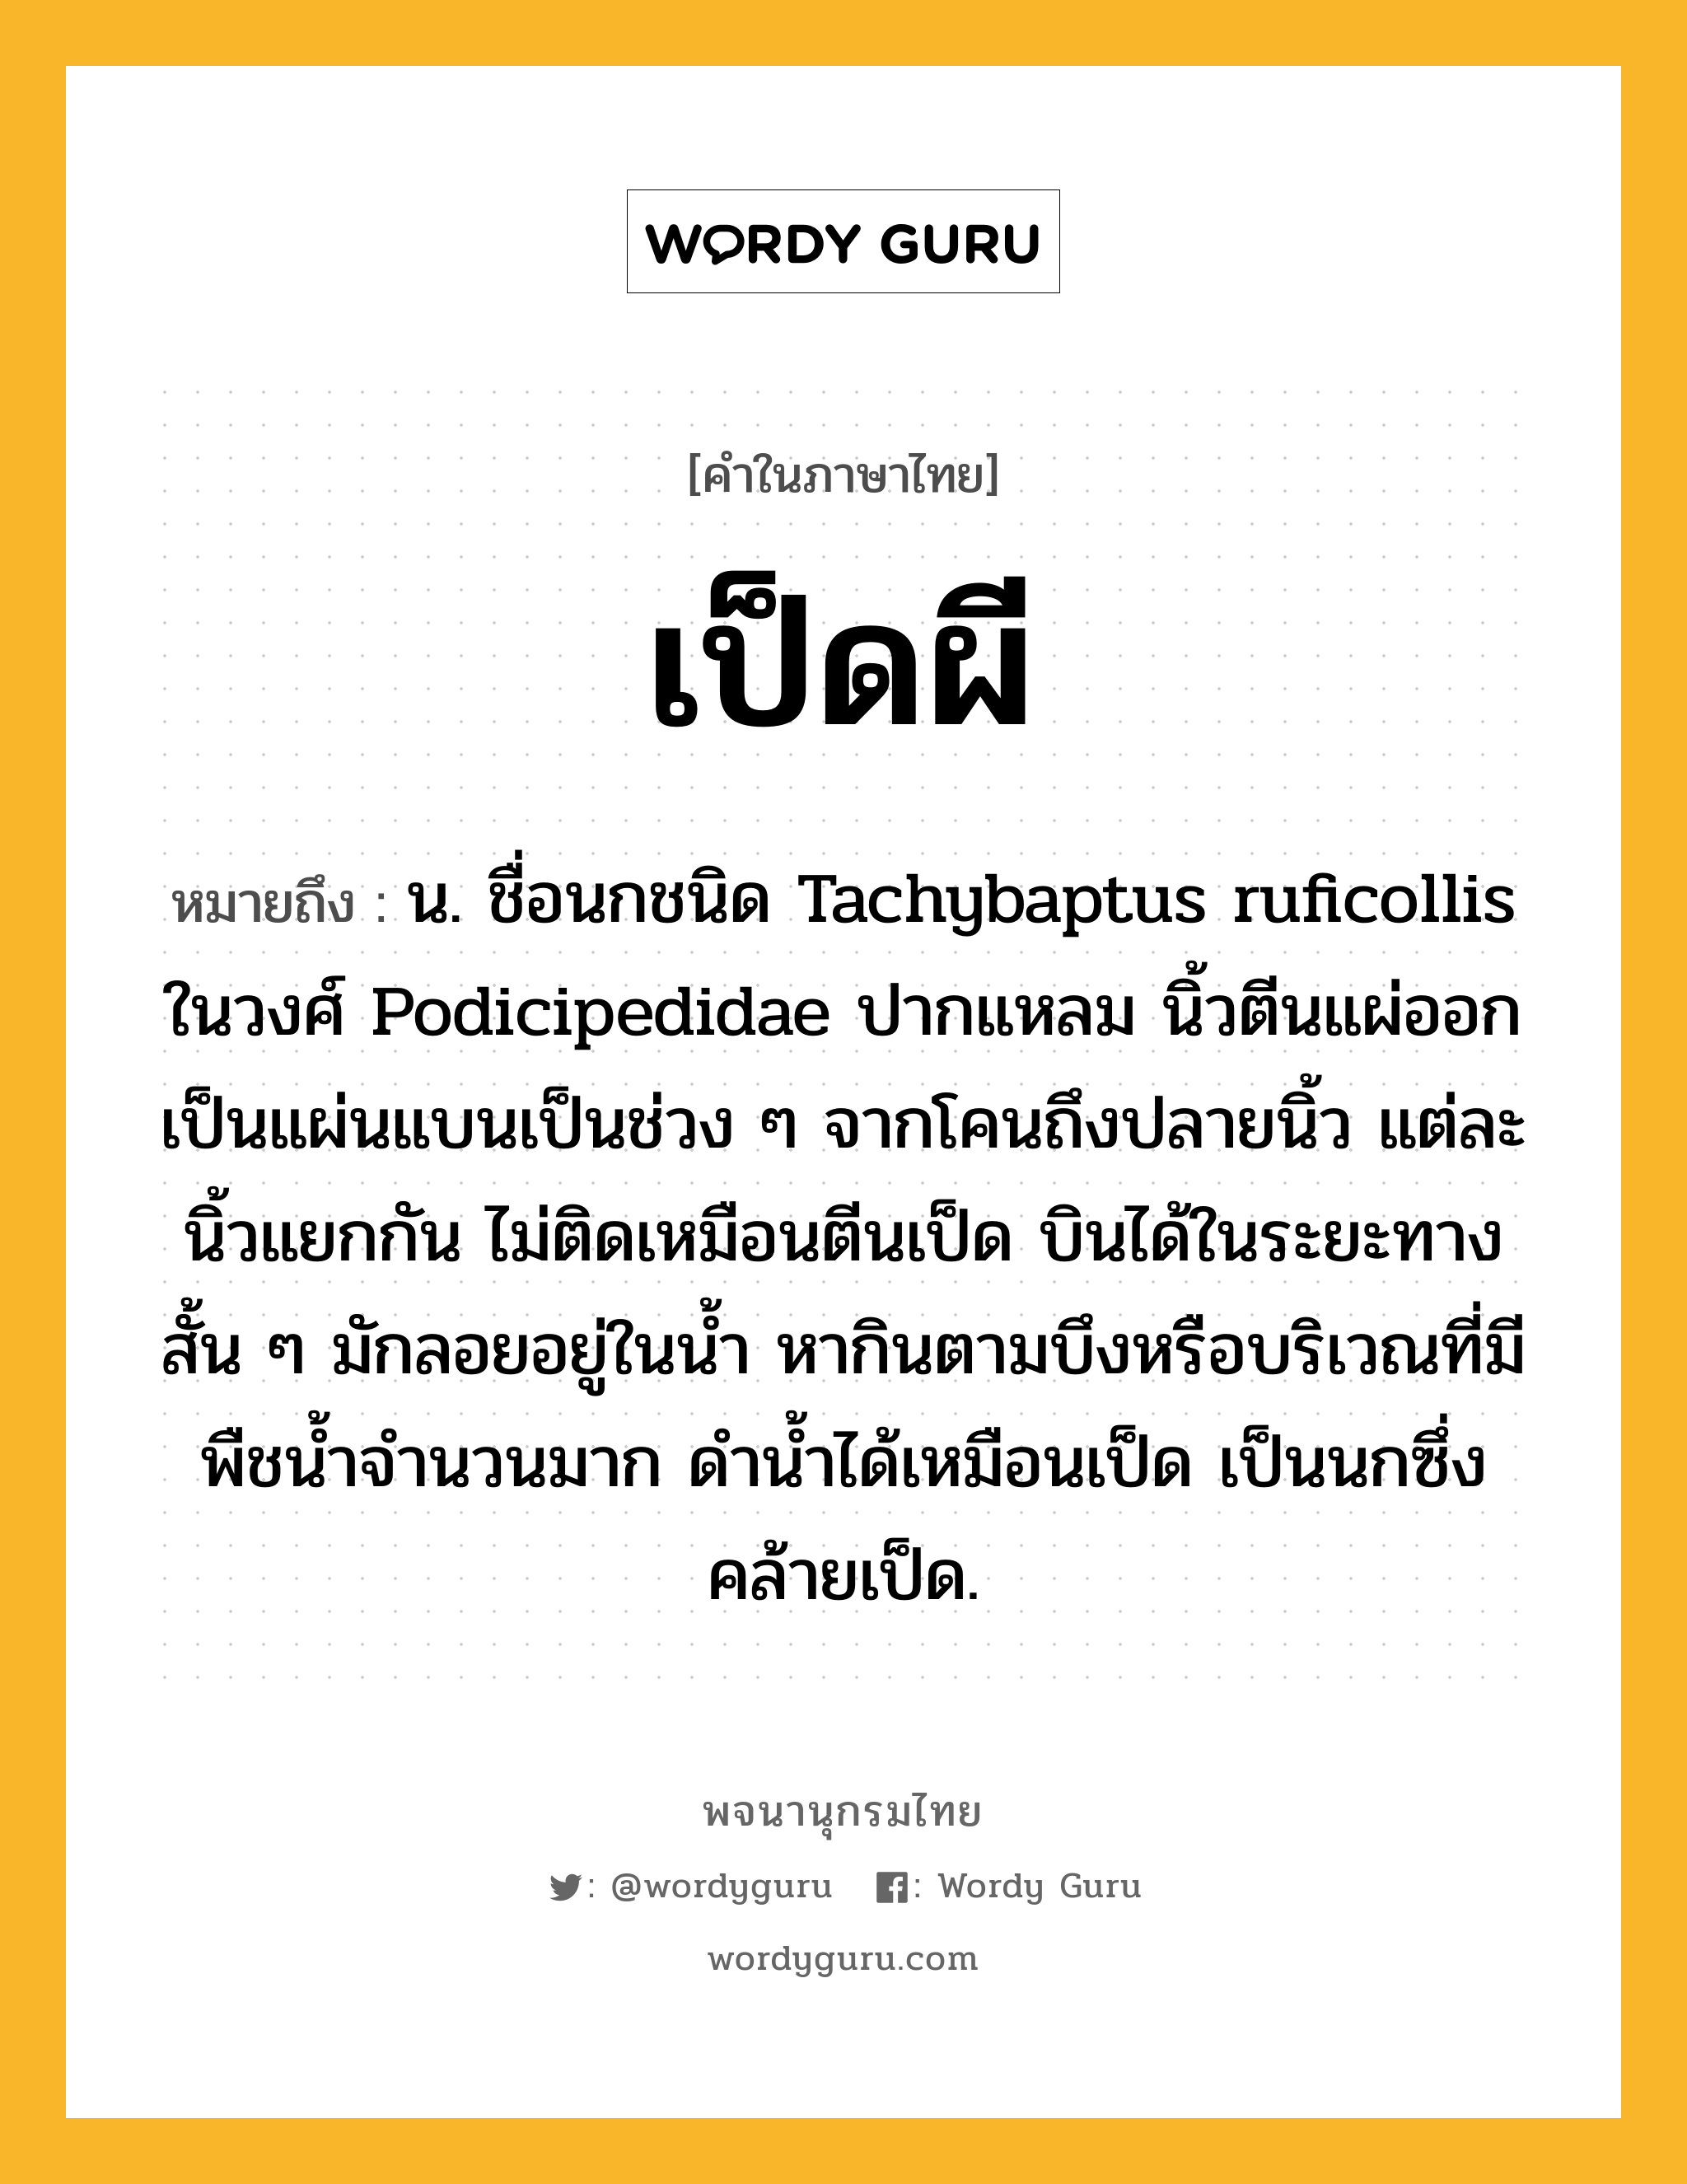 เป็ดผี ความหมาย หมายถึงอะไร?, คำในภาษาไทย เป็ดผี หมายถึง น. ชื่อนกชนิด Tachybaptus ruficollis ในวงศ์ Podicipedidae ปากแหลม นิ้วตีนแผ่ออกเป็นแผ่นแบนเป็นช่วง ๆ จากโคนถึงปลายนิ้ว แต่ละนิ้วแยกกัน ไม่ติดเหมือนตีนเป็ด บินได้ในระยะทางสั้น ๆ มักลอยอยู่ในนํ้า หากินตามบึงหรือบริเวณที่มีพืชนํ้าจํานวนมาก ดํานํ้าได้เหมือนเป็ด เป็นนกซึ่งคล้ายเป็ด.